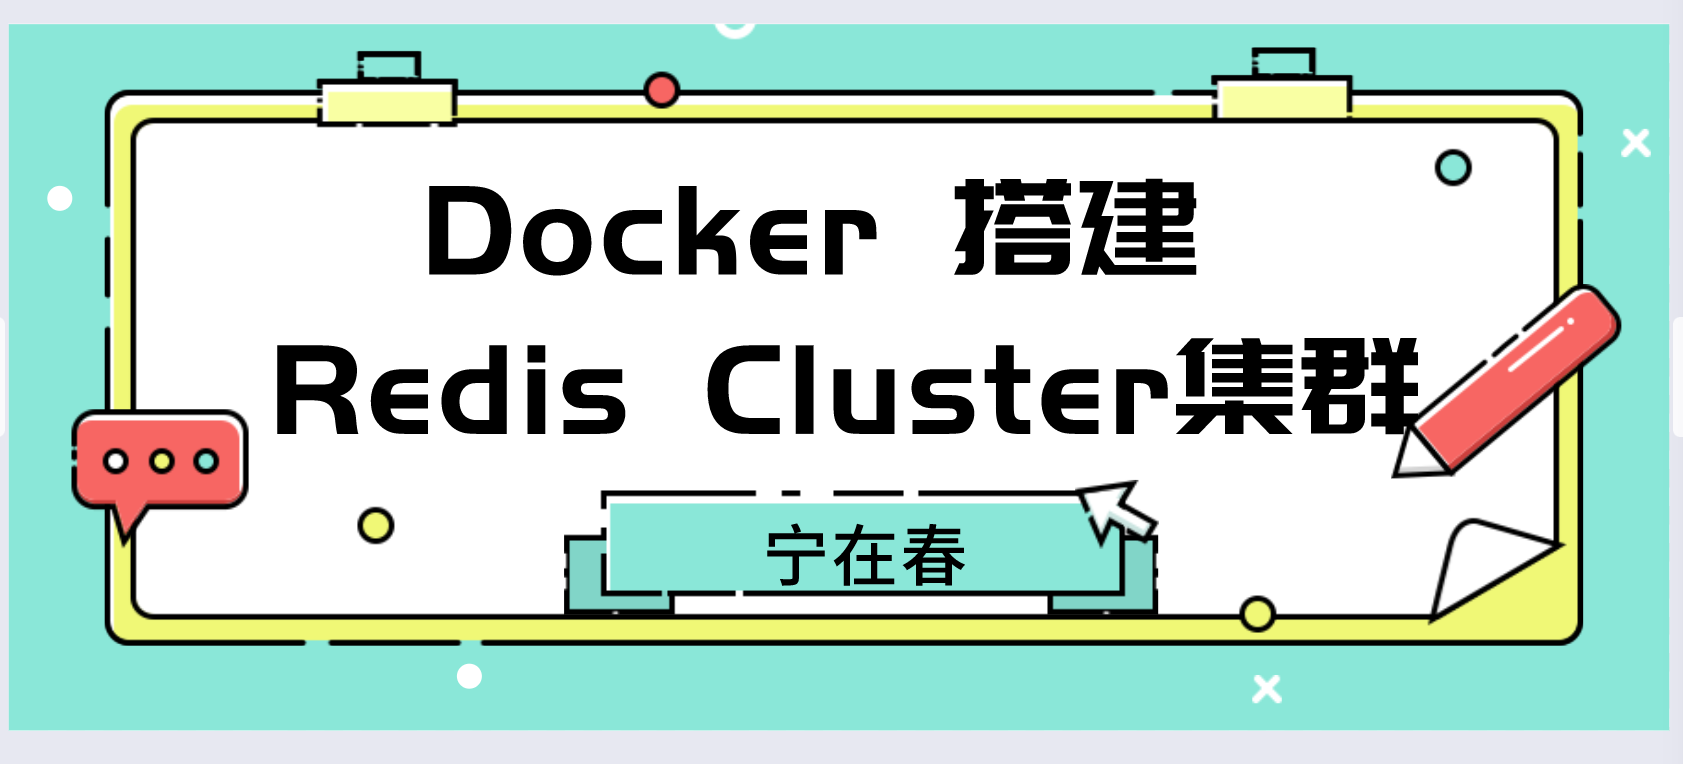 Docker 搭建 Redis Cluster集群